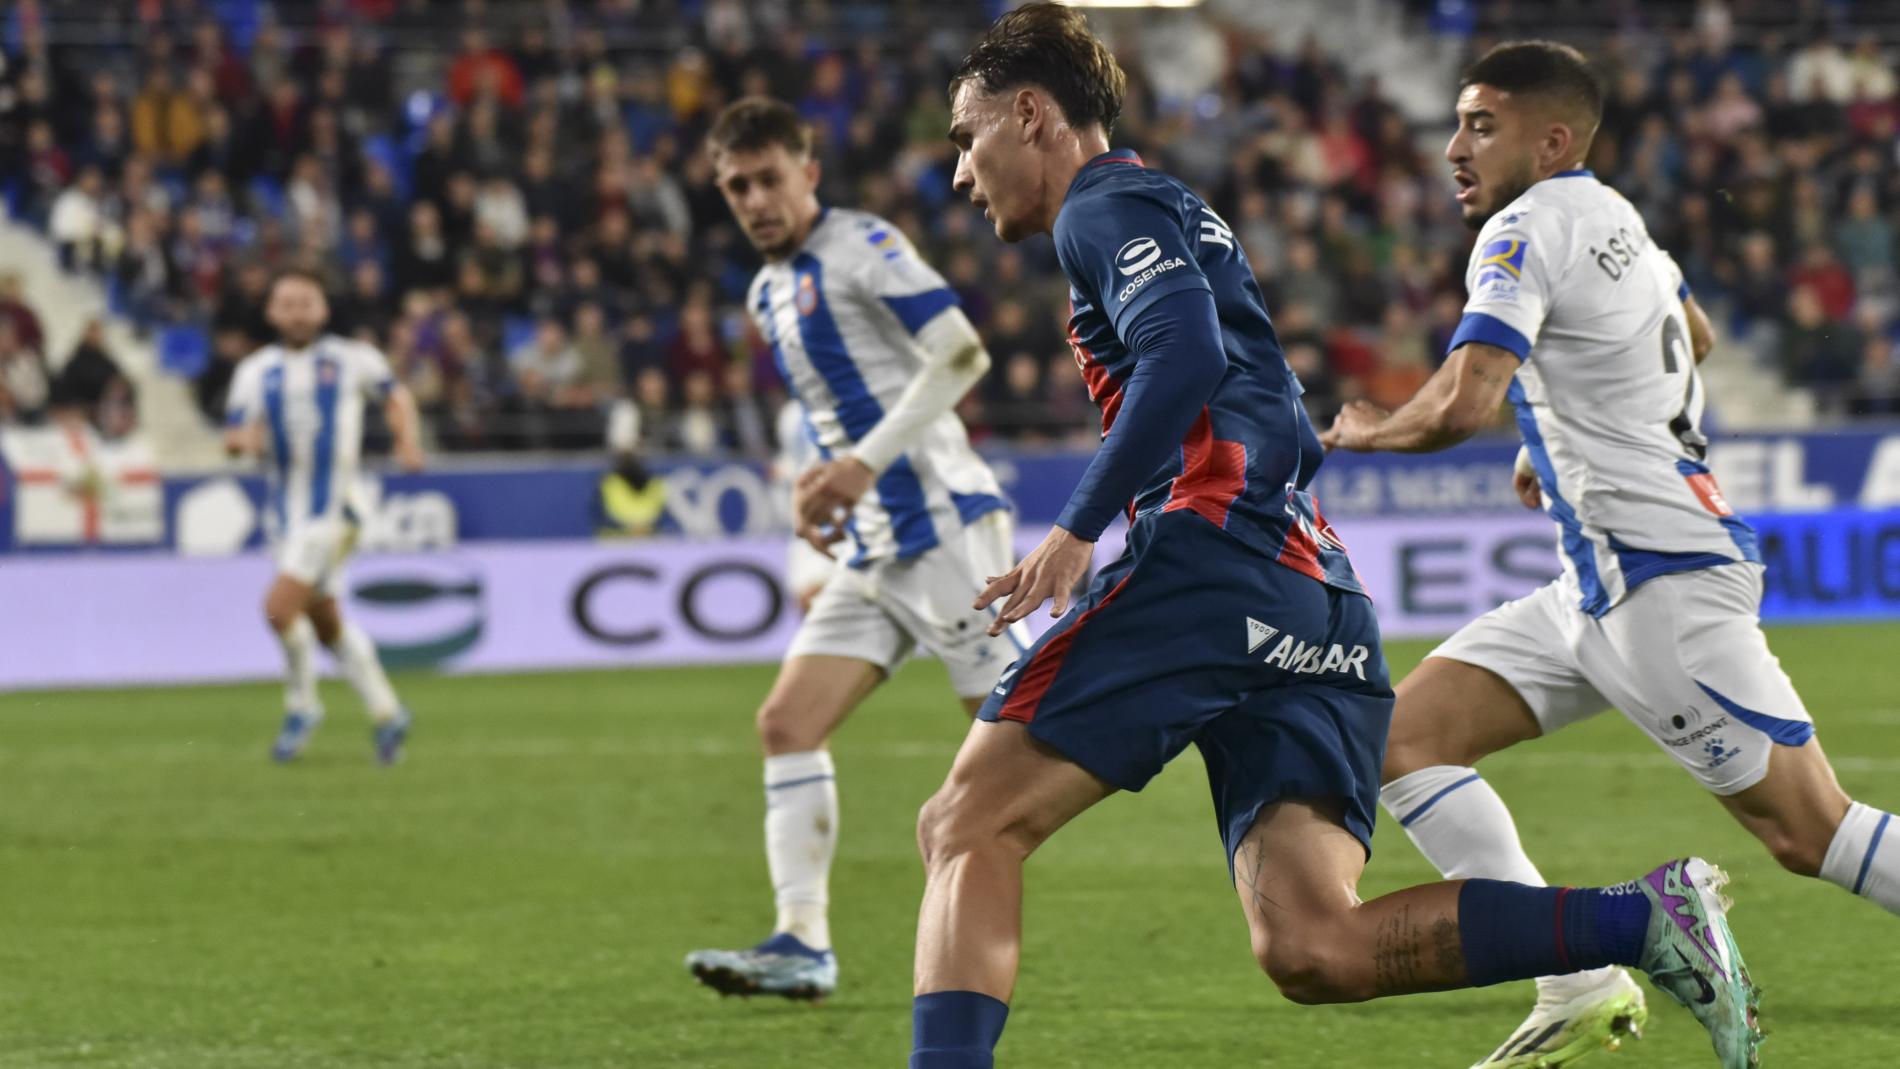 Horario y dónde ver el RCD Espanyol - SD Huesca de la jornada 29